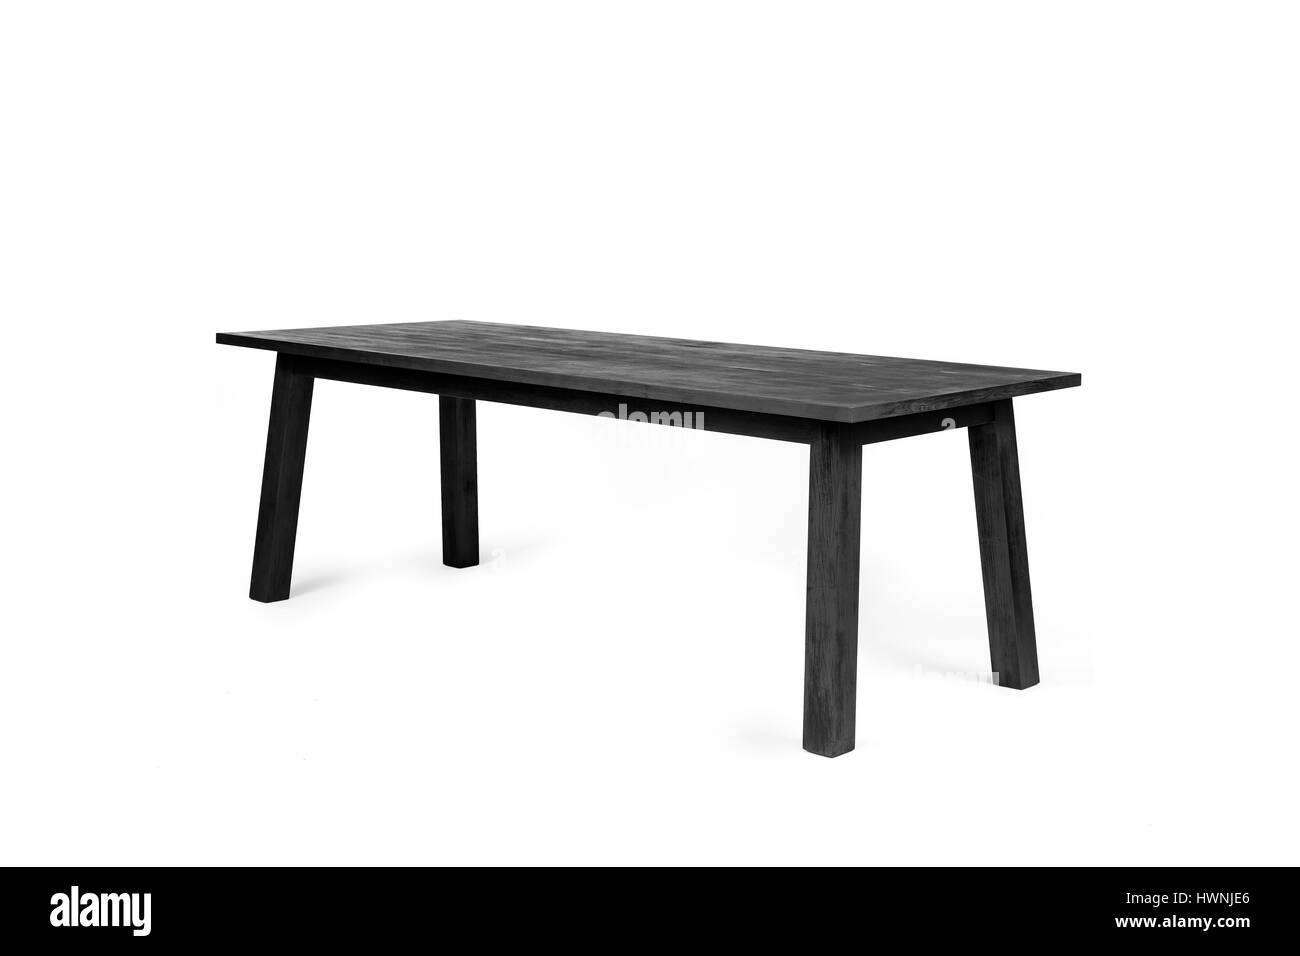 Un tavolo moderno - fatta di legno carbonizzati secondo la shou-sugi-ban tecnica - fotografato su uno sfondo bianco. Foto Stock